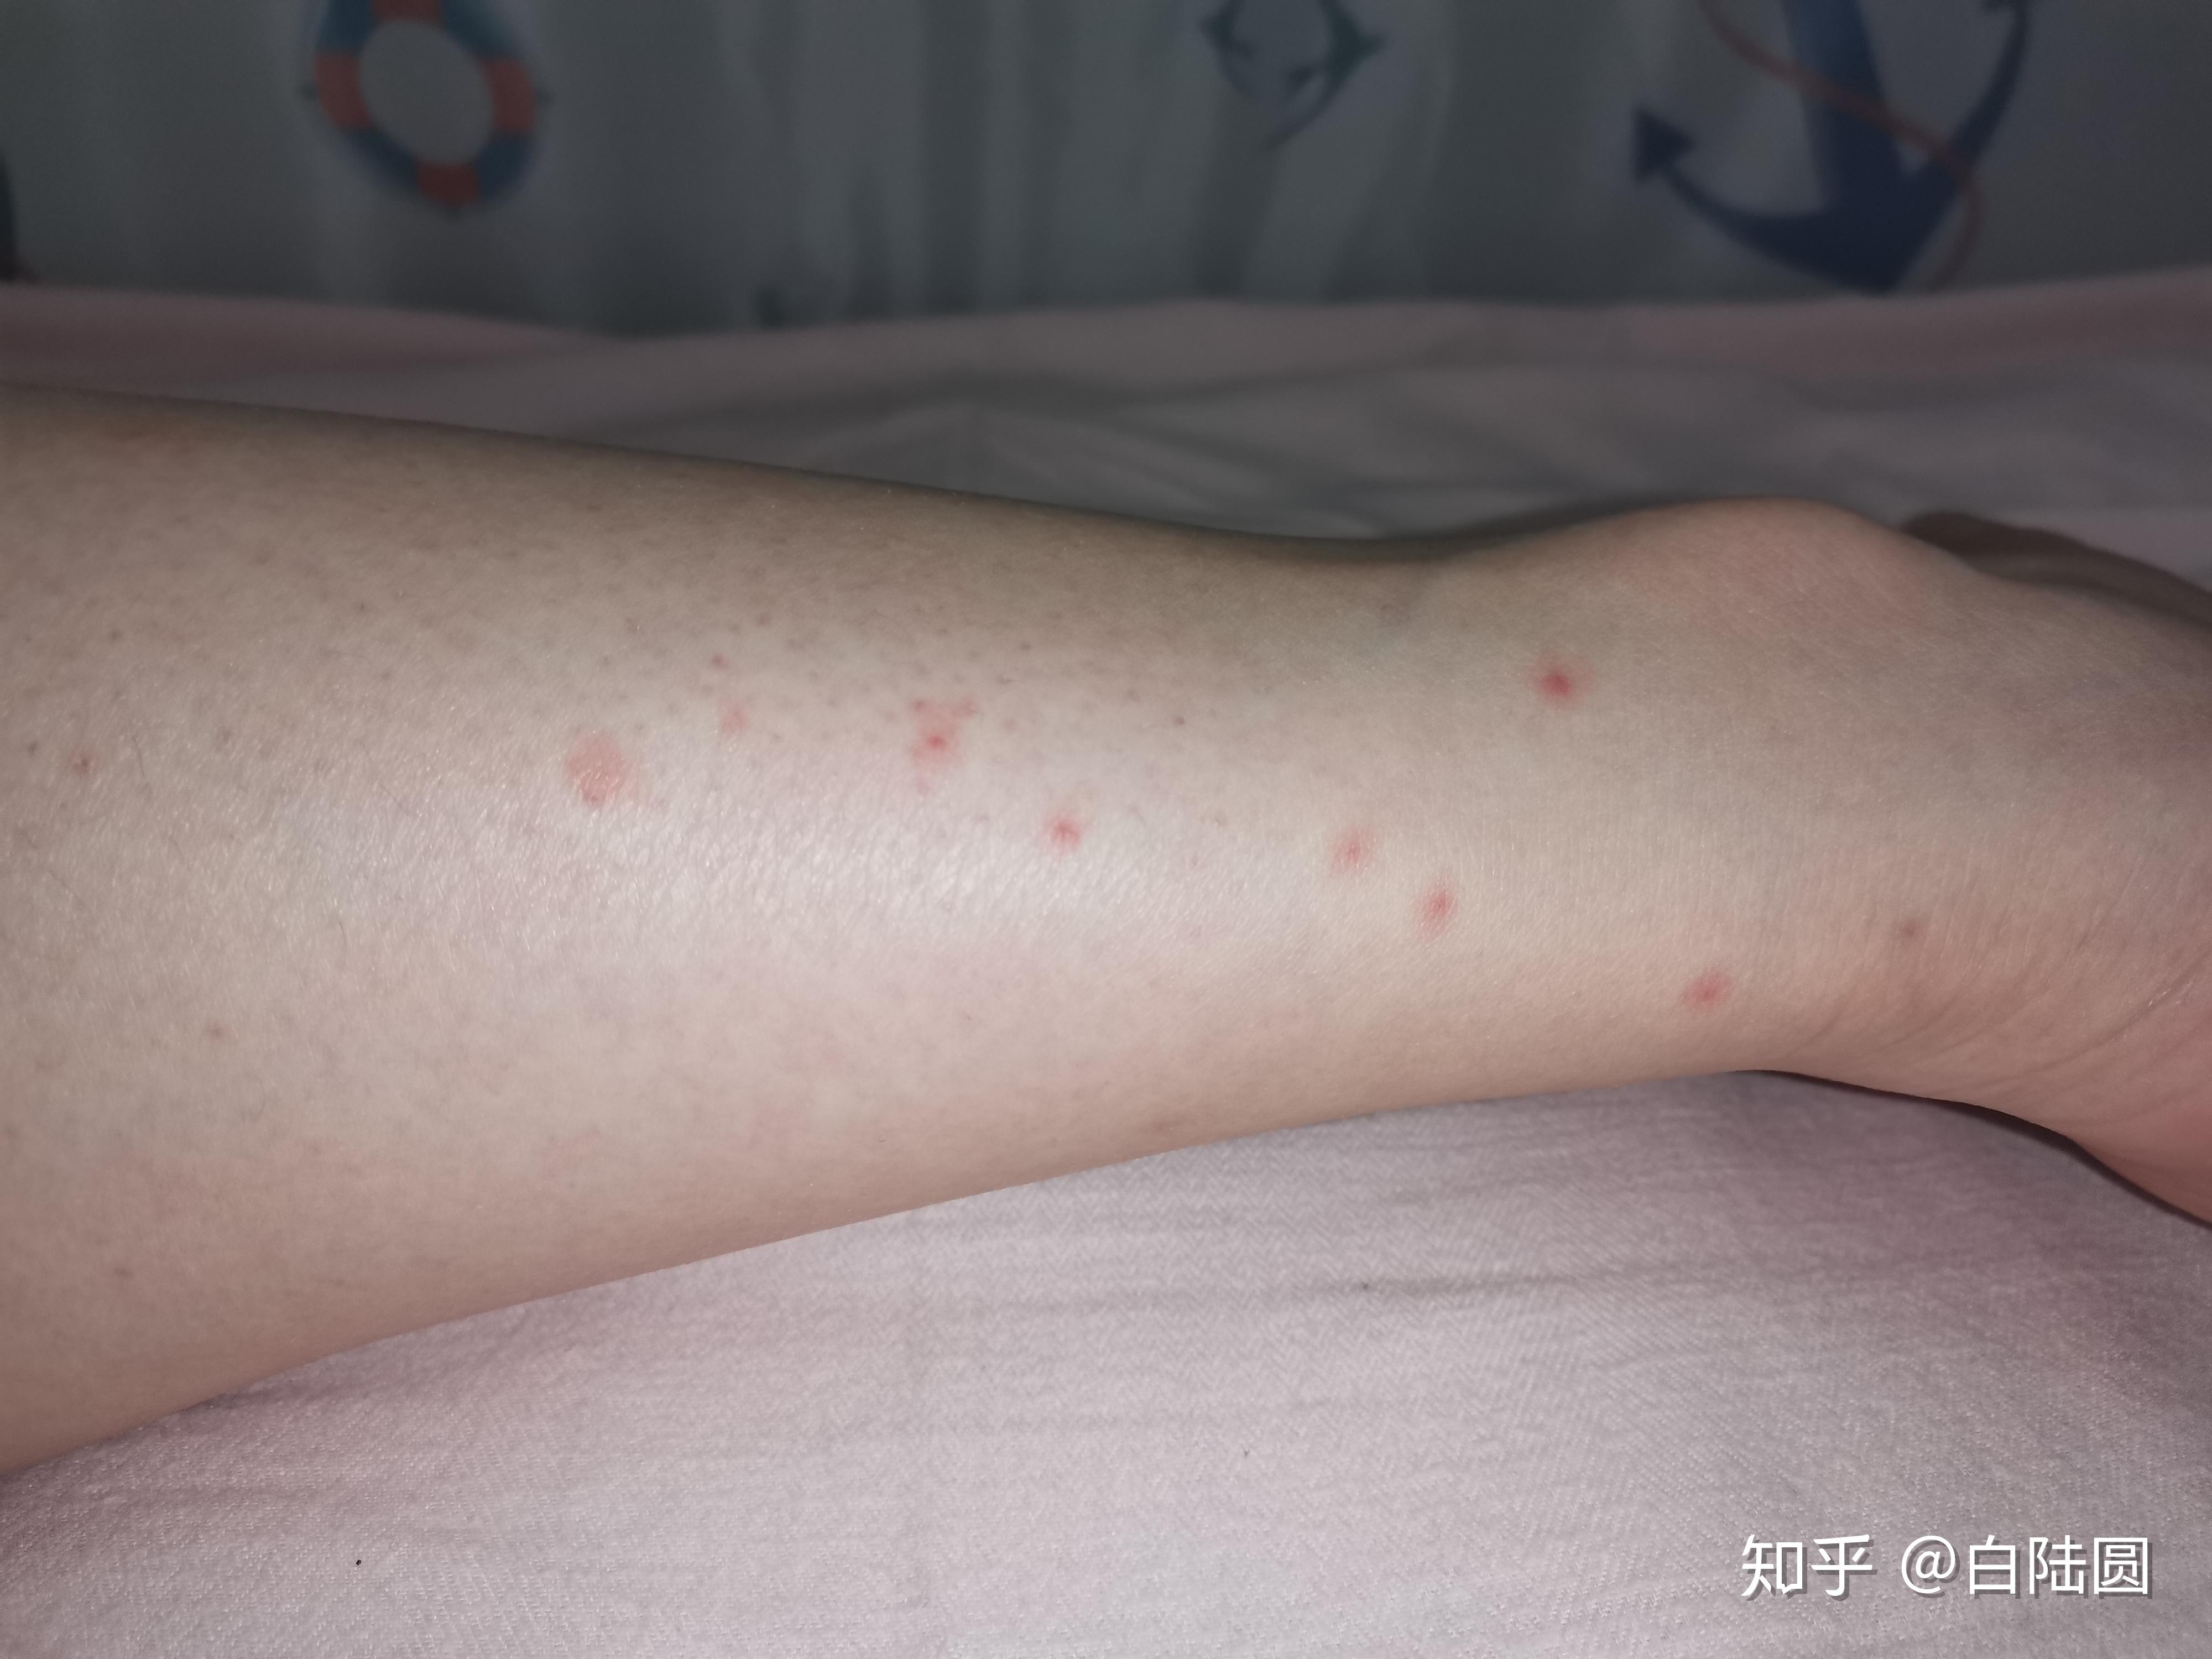 为什么我被蚊子咬了不起包,只有一个小红点,是什么原因? 